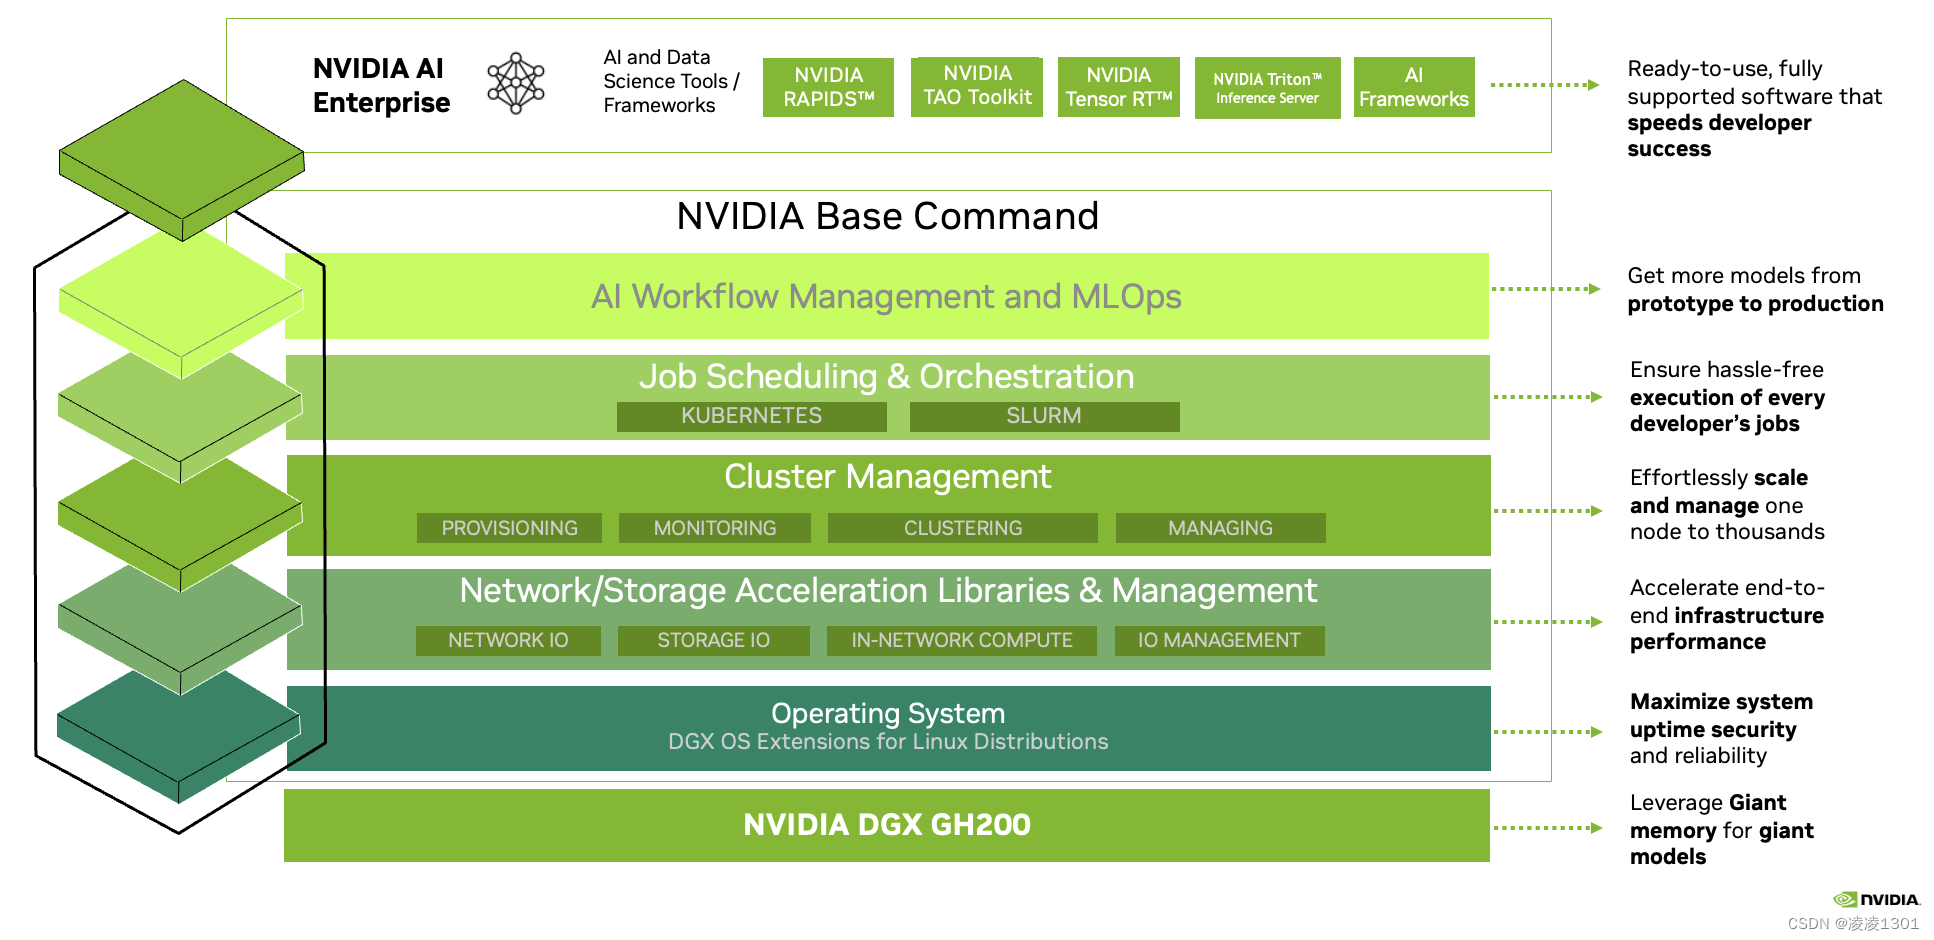 图 4. NVIDIA DGX GH200 AI 超级计算机完整堆栈包括 NVIDIA Base Command 和 NVIDIA AI Enterprise